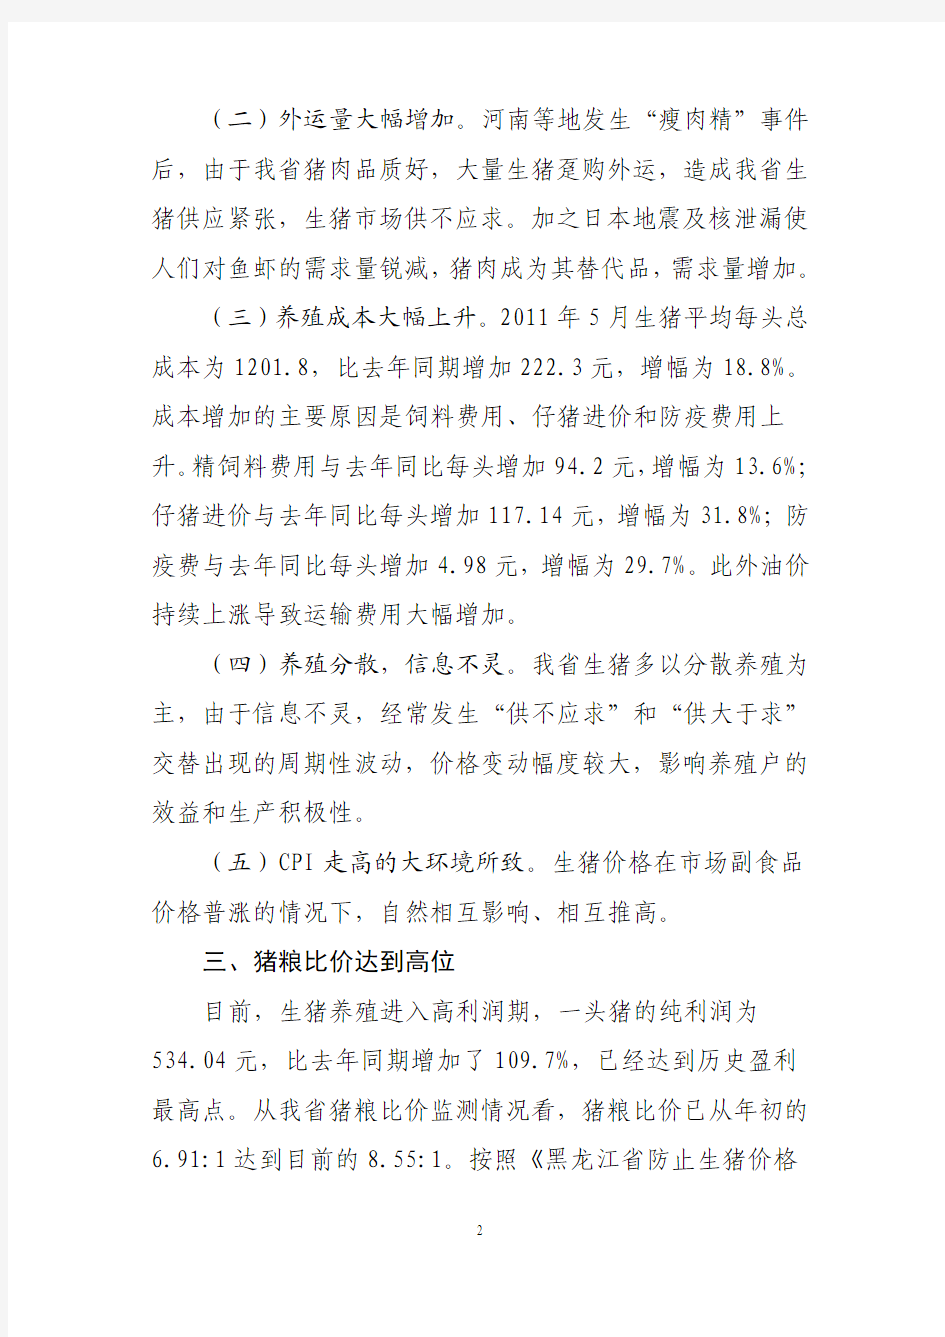 黑龙江省生猪价格走势分析及预测